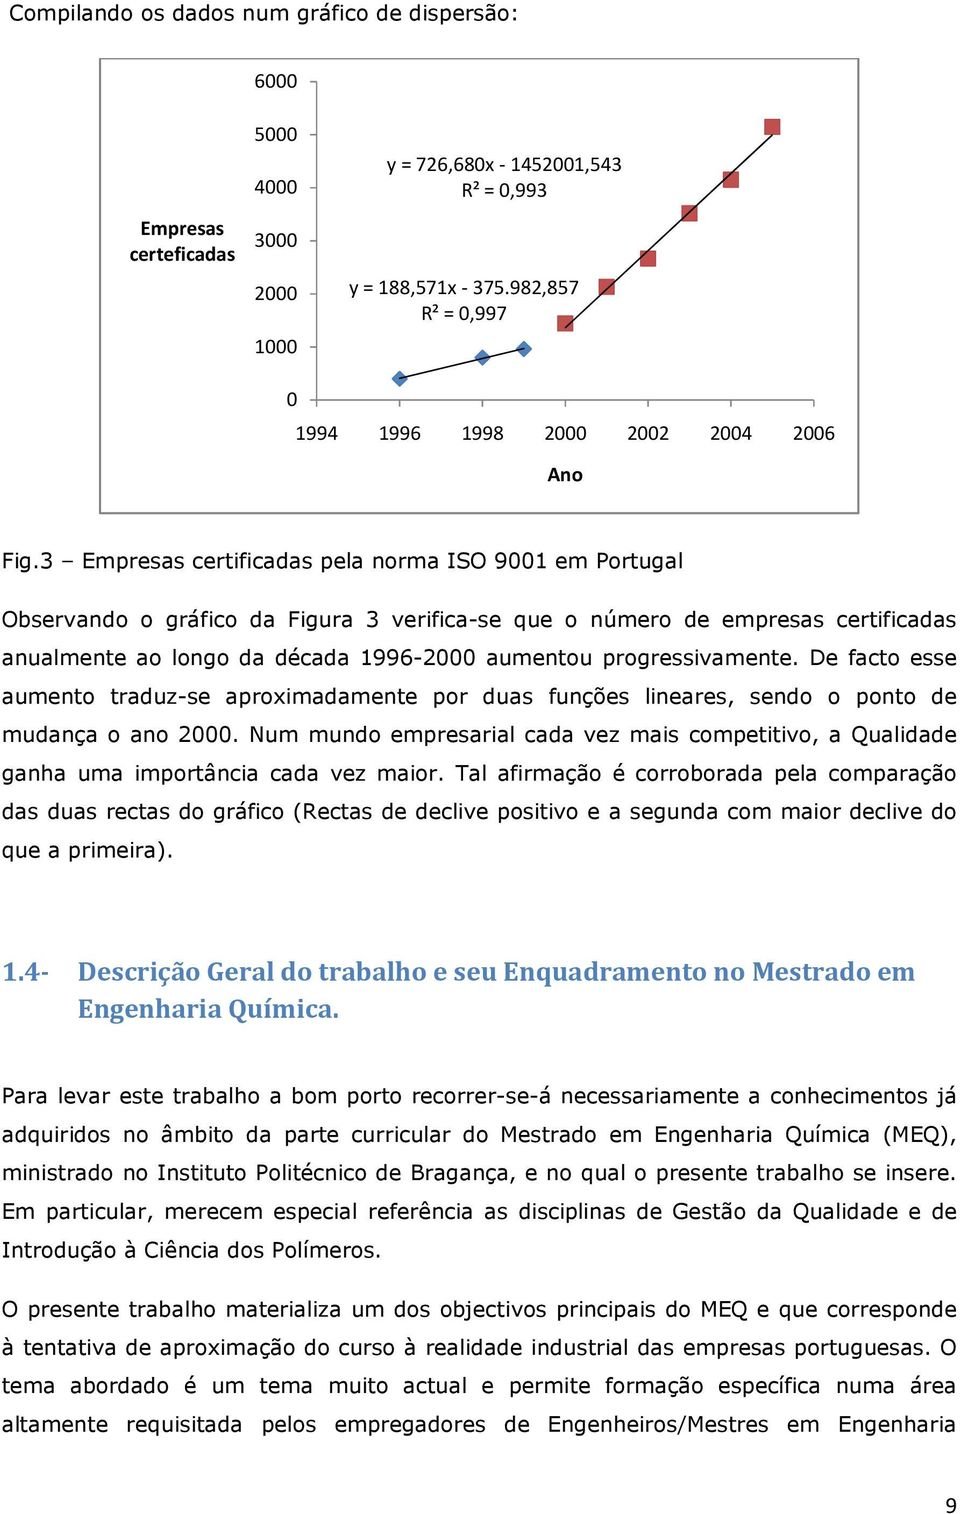 3 Empresas certificadas pela norma ISO 9001 em Portugal Observando o gráfico da Figura 3 verifica-se que o número de empresas certificadas anualmente ao longo da década 1996-2000 aumentou